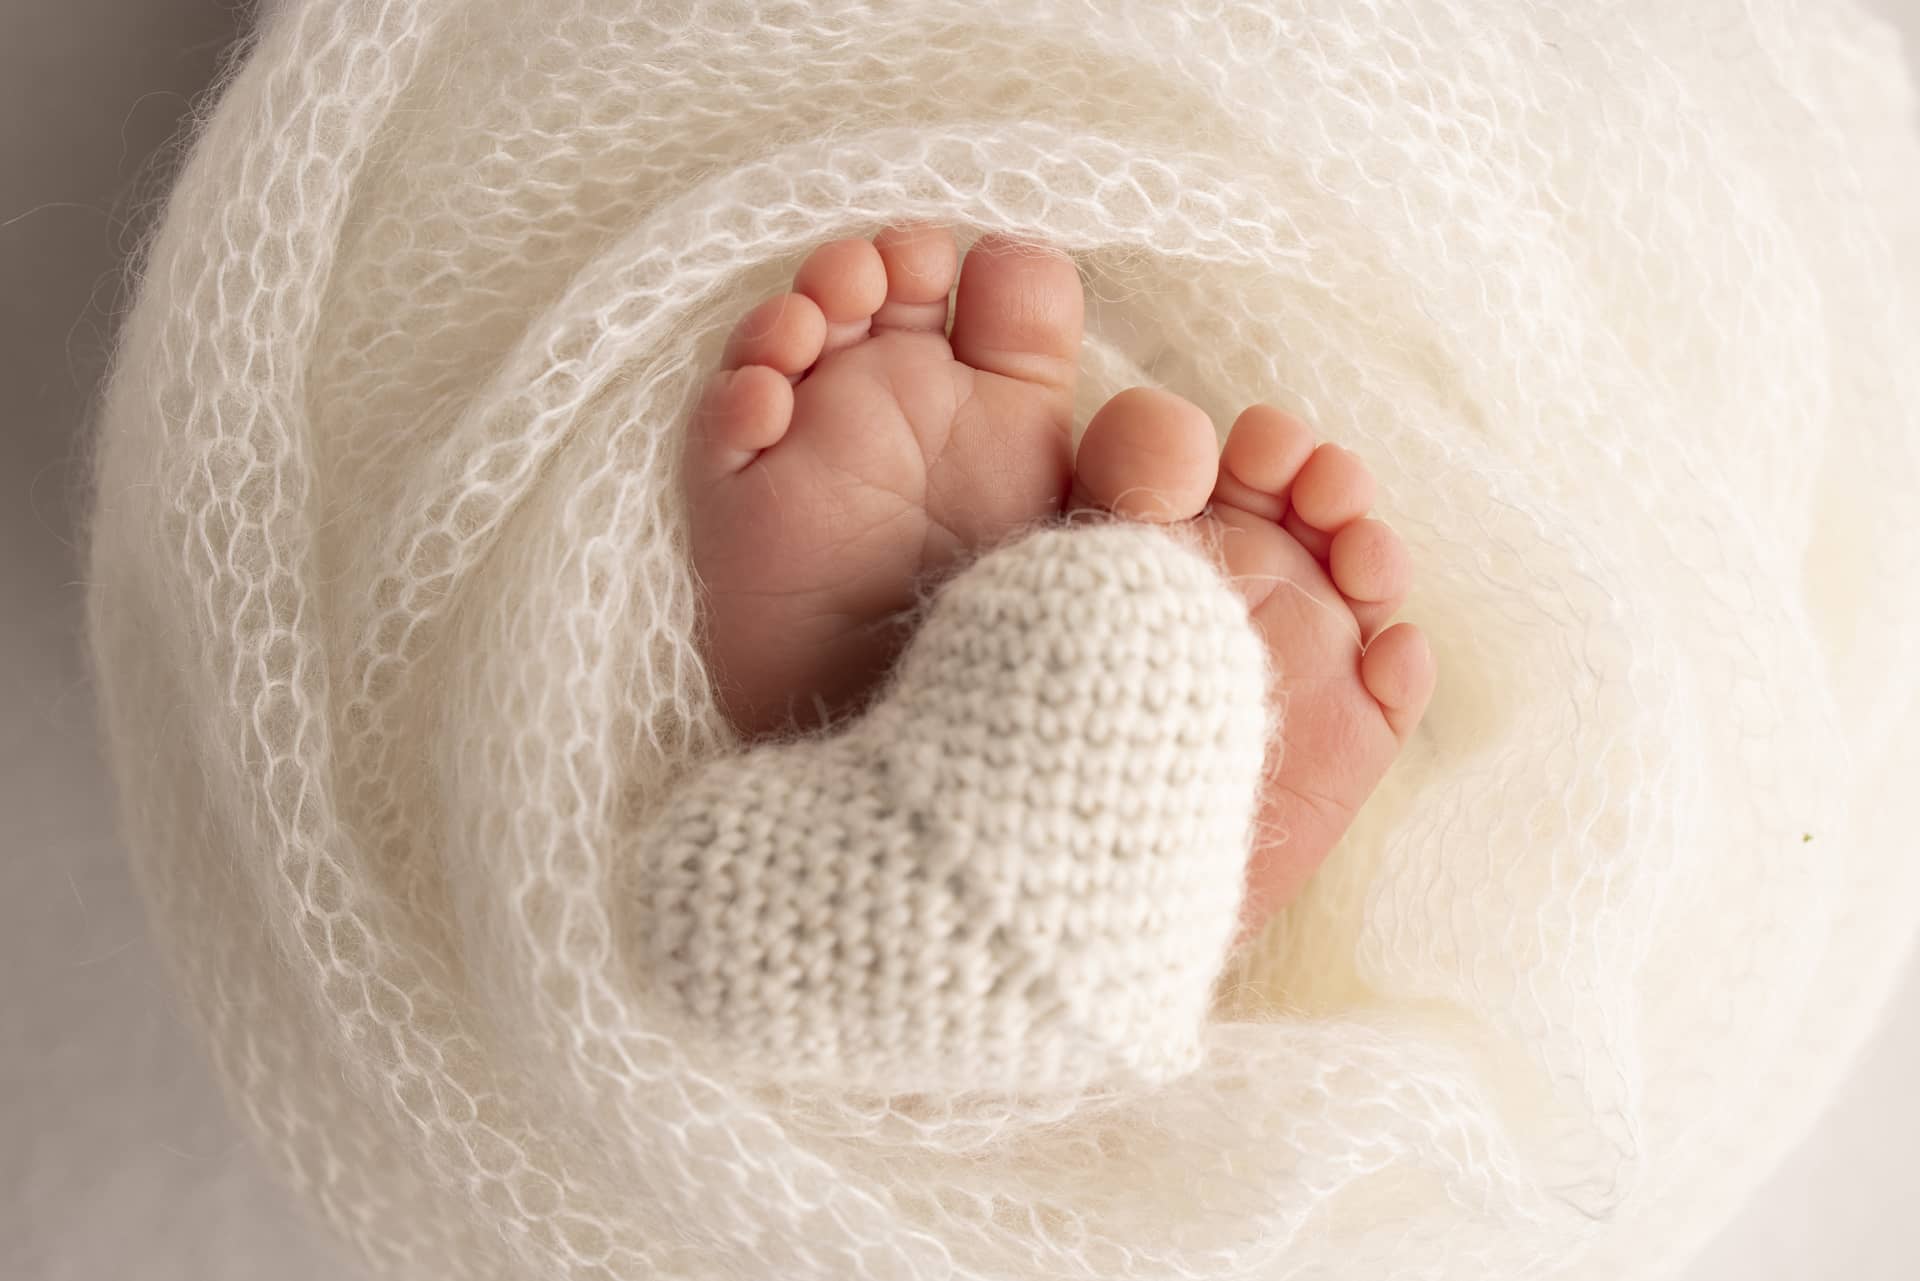 Heels feet newborn knitted white heart legs baby macro photography